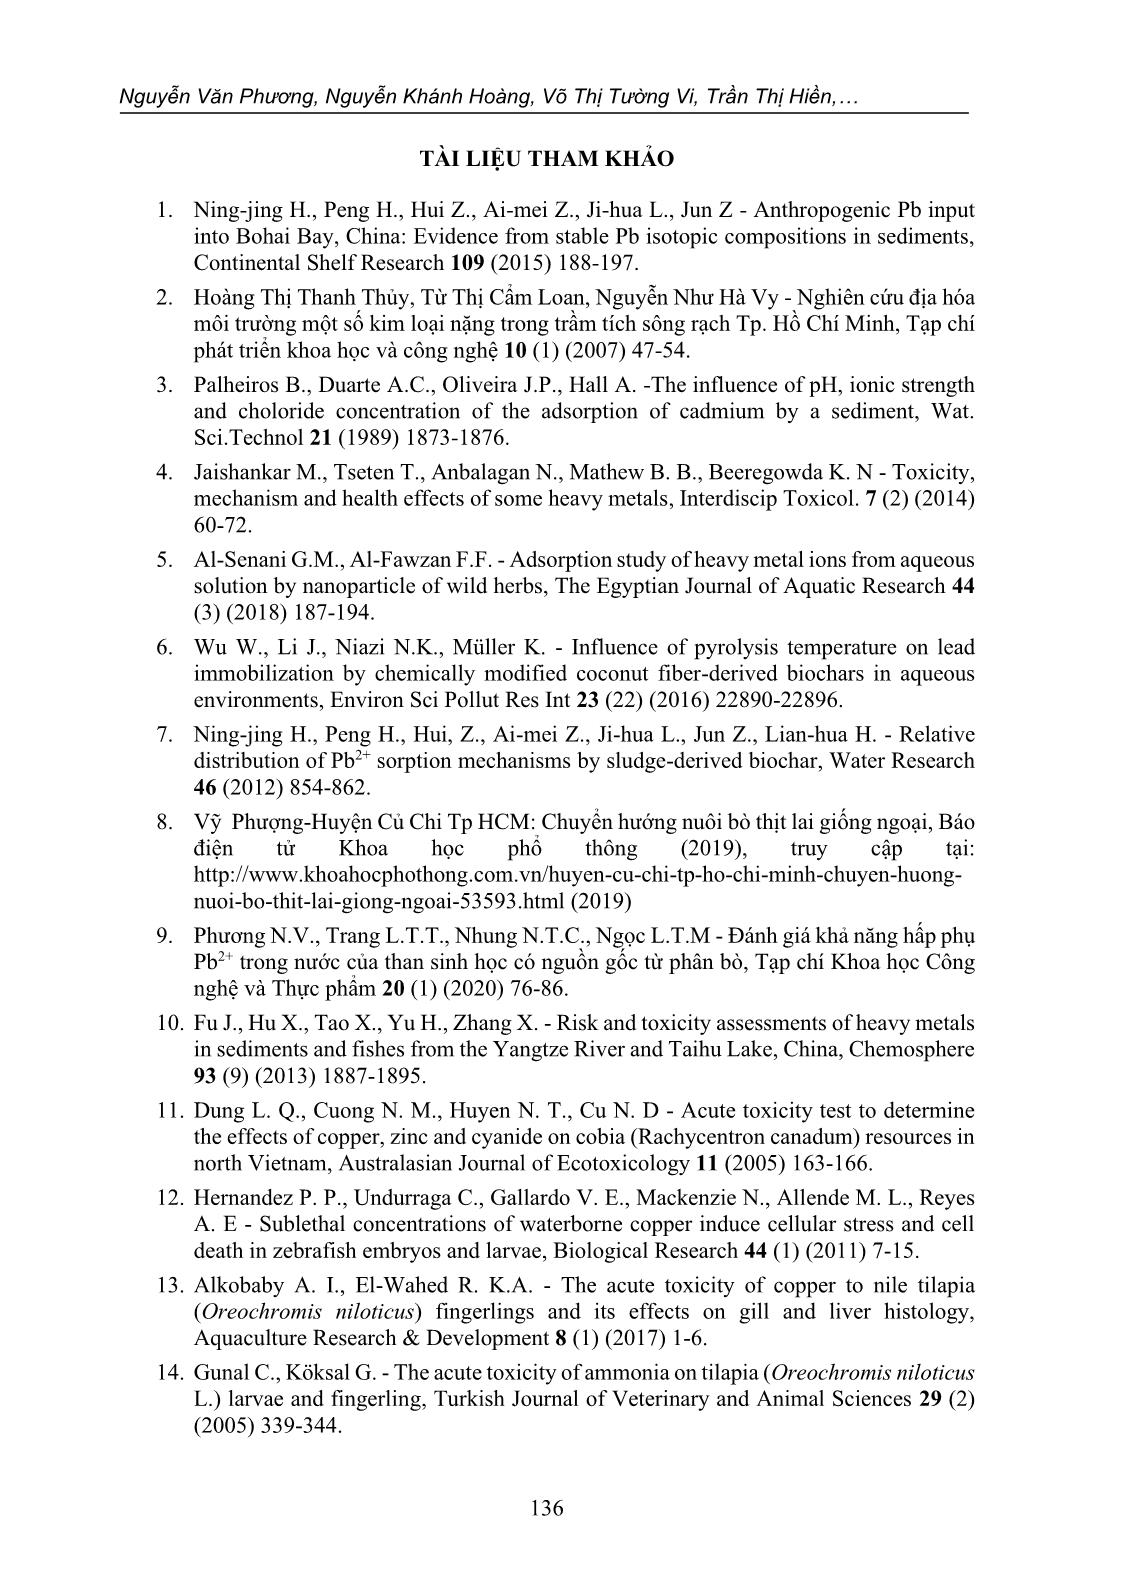 Đánh giá hiệu quả loại bỏ độc chất Pb2+ trong nước của than sinh học có nguồn gốc từ phân bò: Thử nghiệm độc tính trên cá rô phi giống (o. niloticus) trang 10